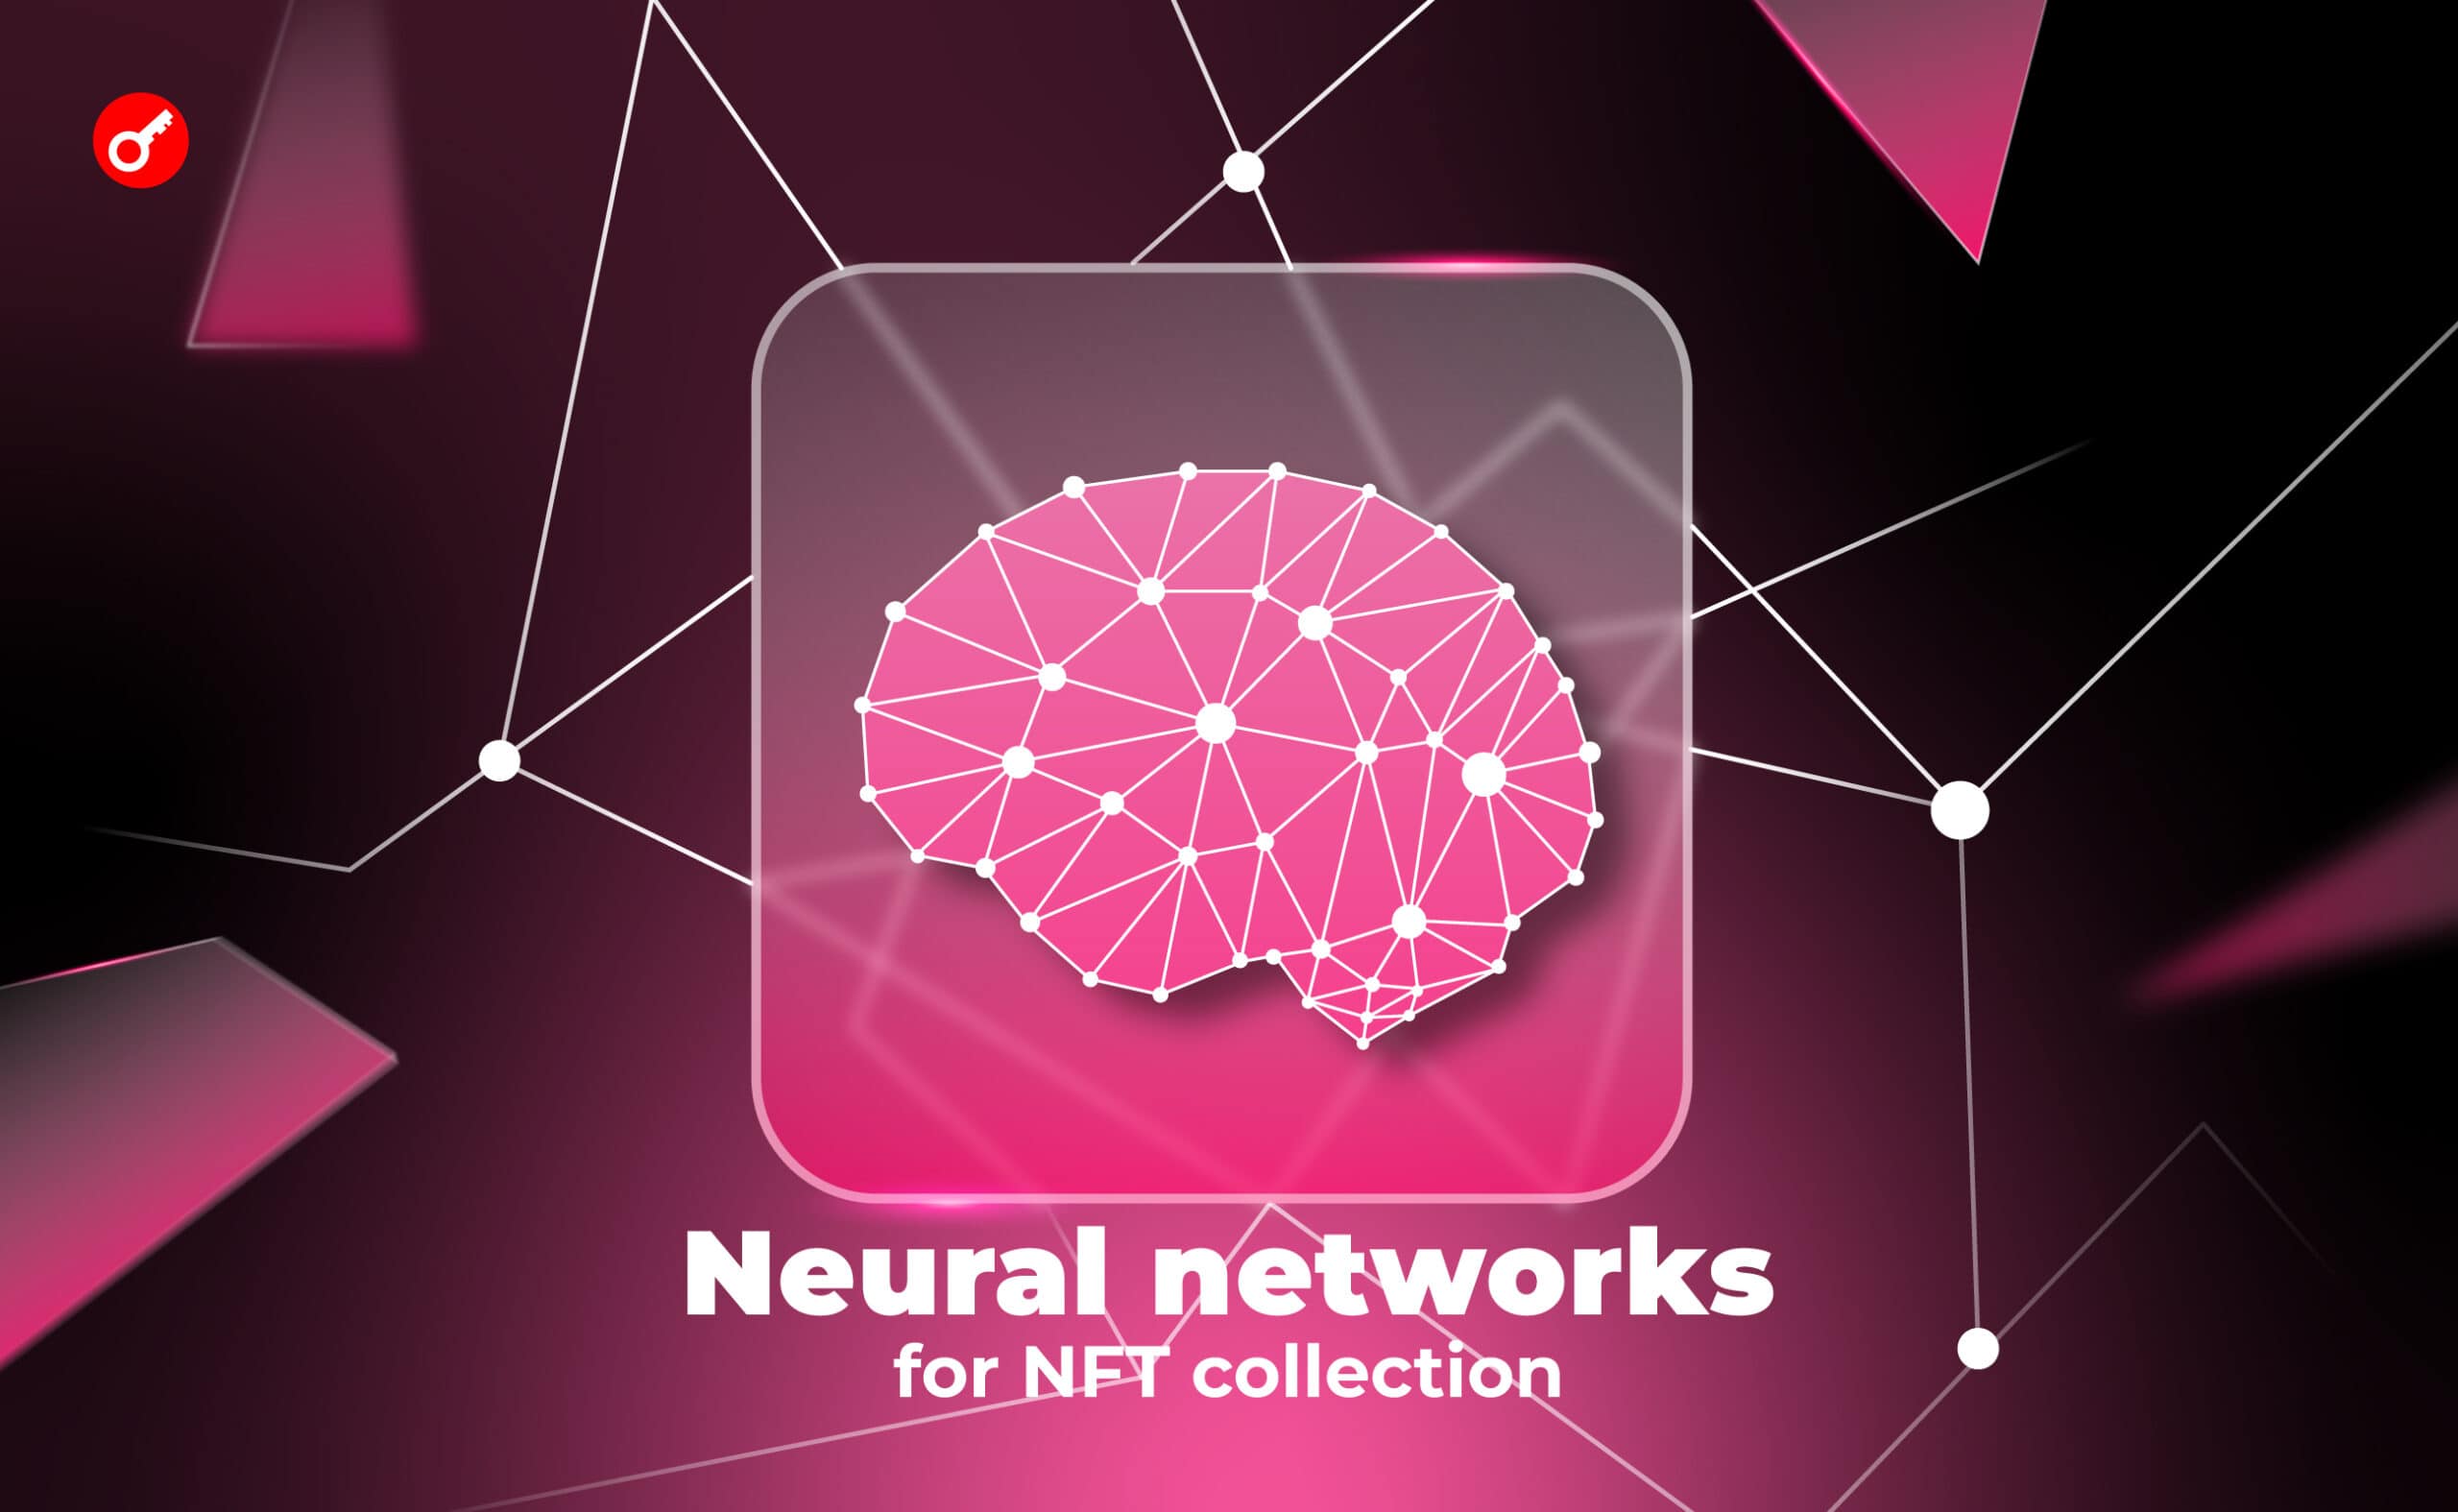 11 лучших нейросетей для генерации изображений по описанию. Создаем NFT-коллекцию с помощью AI (готовые промпты внутри). Заглавный коллаж статьи.